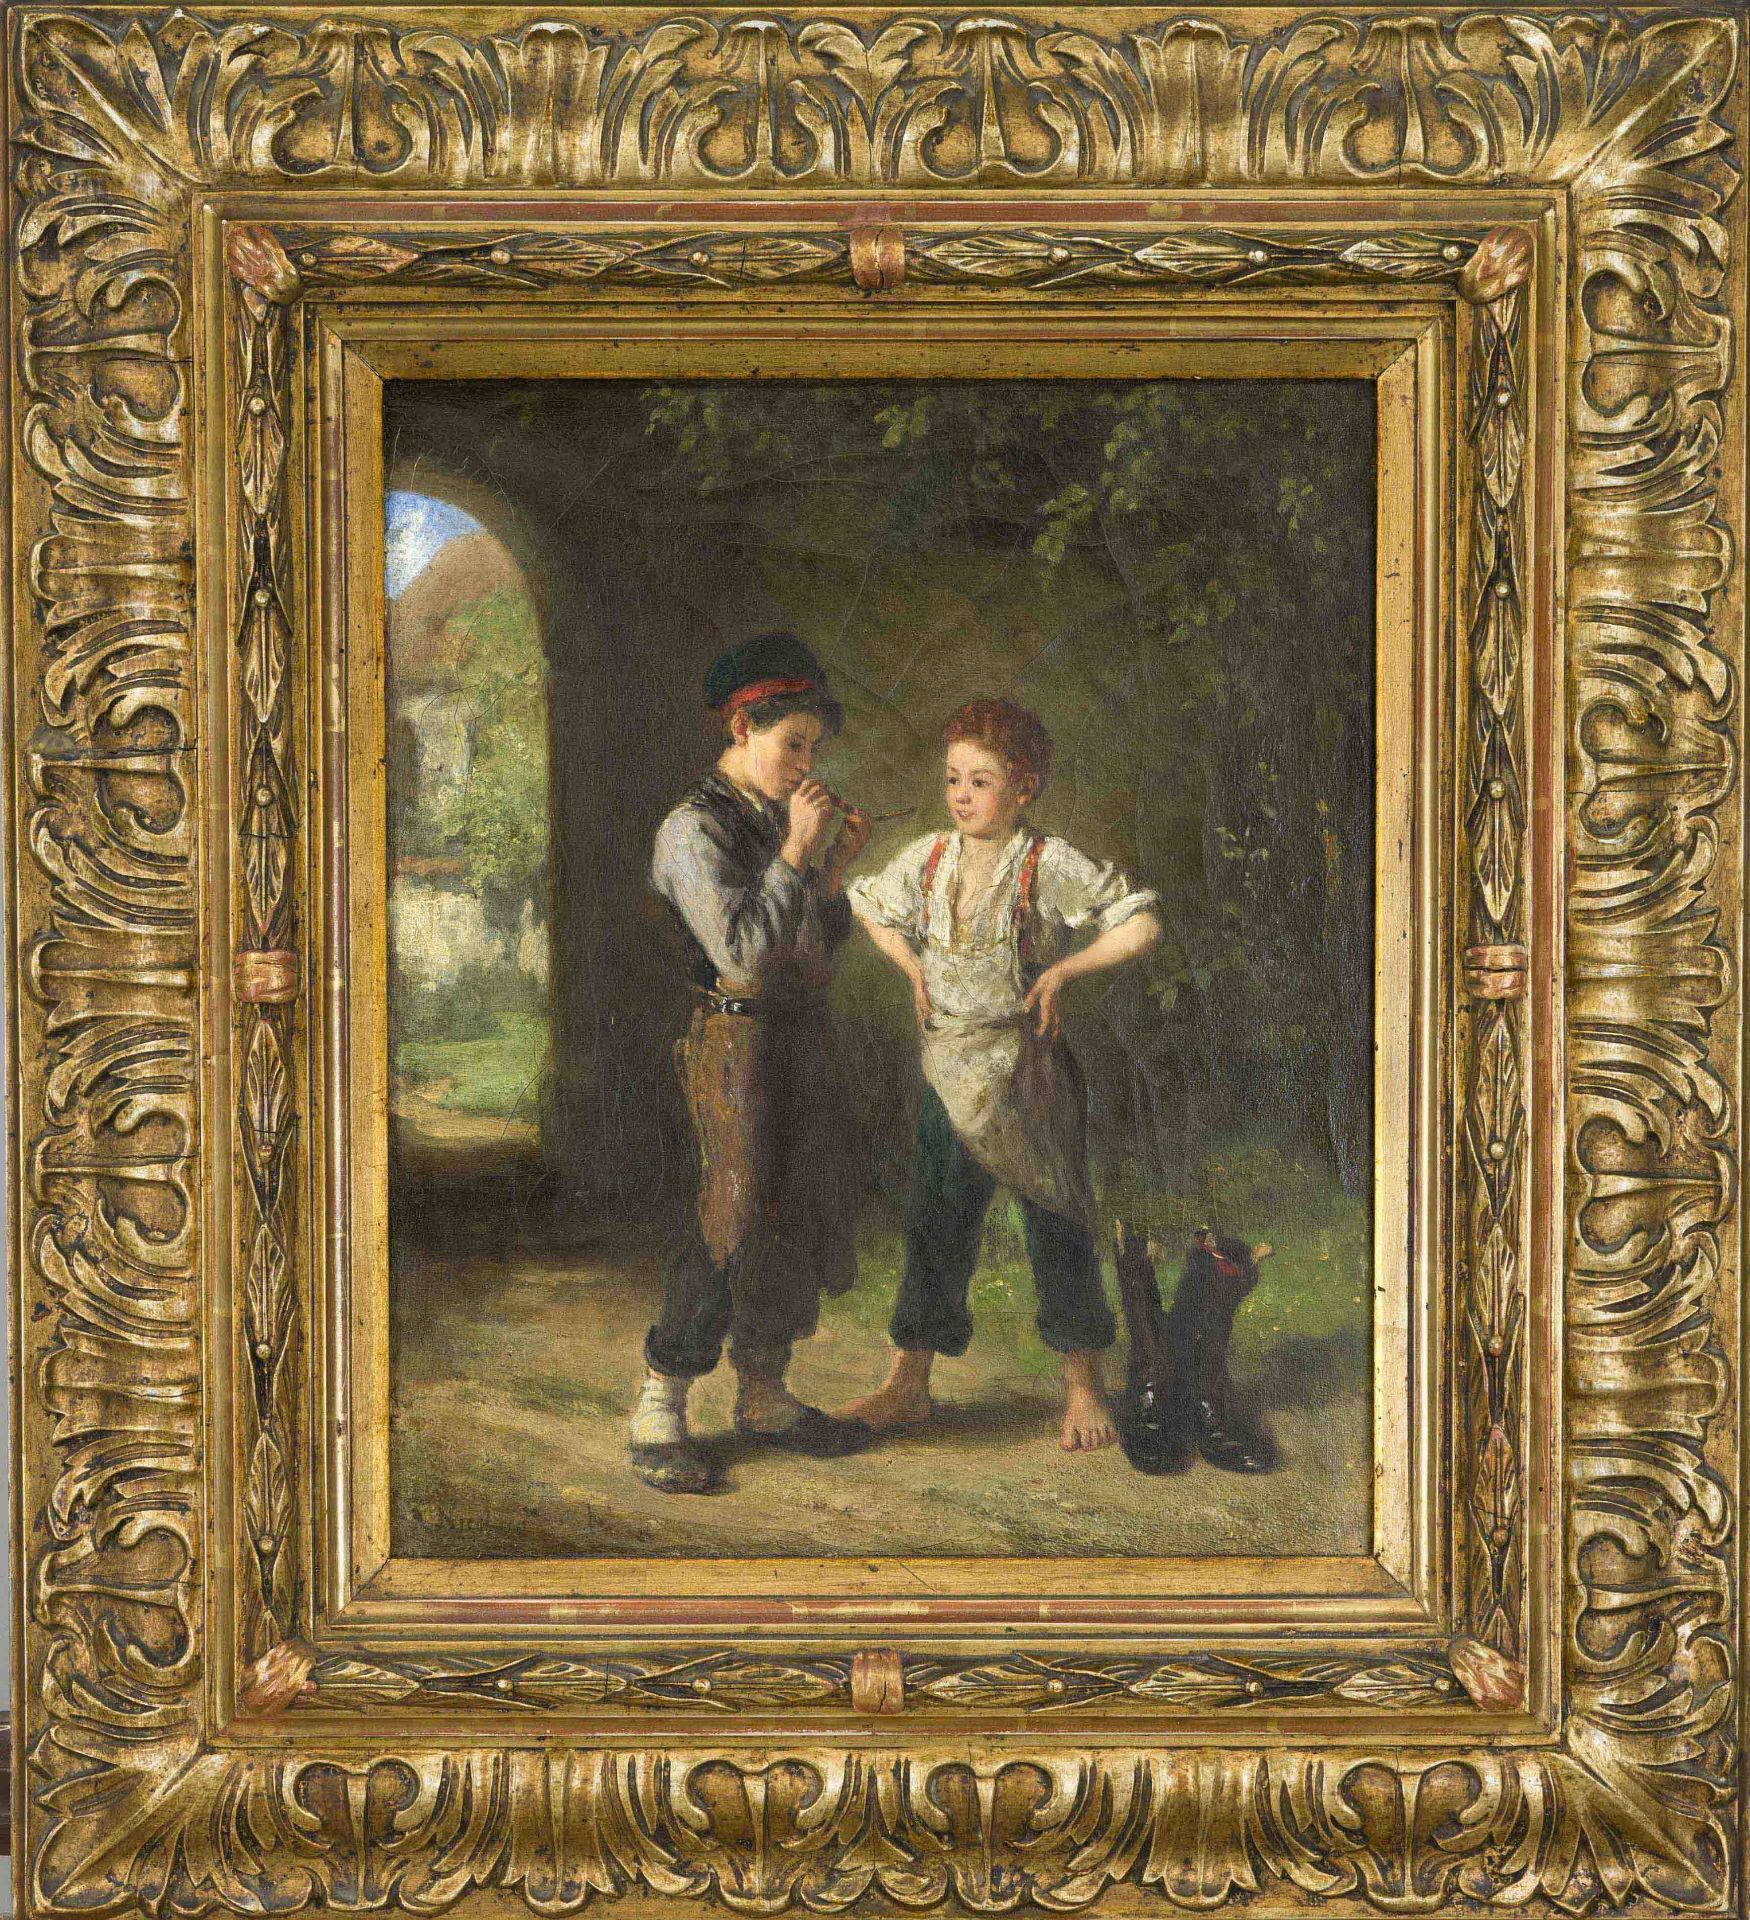 August Heinrich Niedmann (1826-1910), German painter of the Munich School, pupil of Wilhelm von